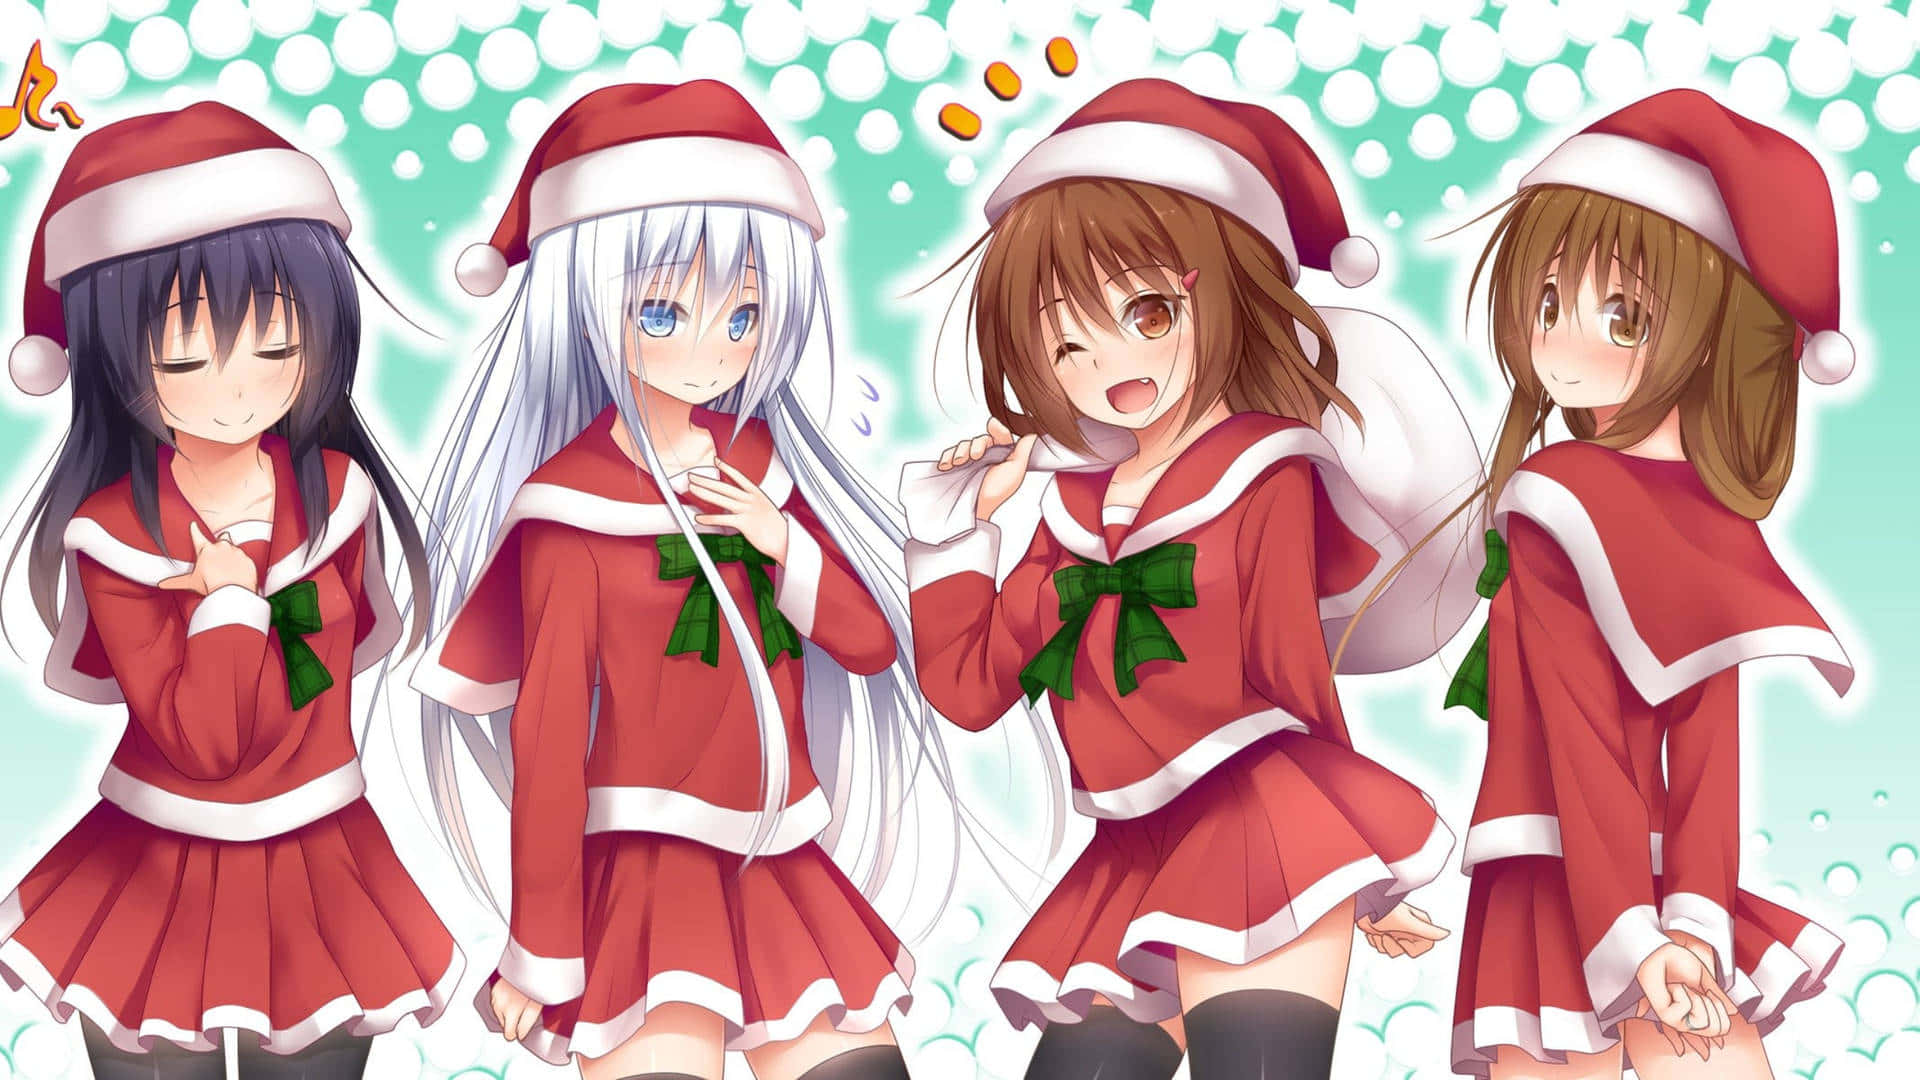 Amicie Famiglia Si Riuniscono Per Celebrare La Stagione Delle Vacanze Con Divertenti E Festose Immagini Anime!